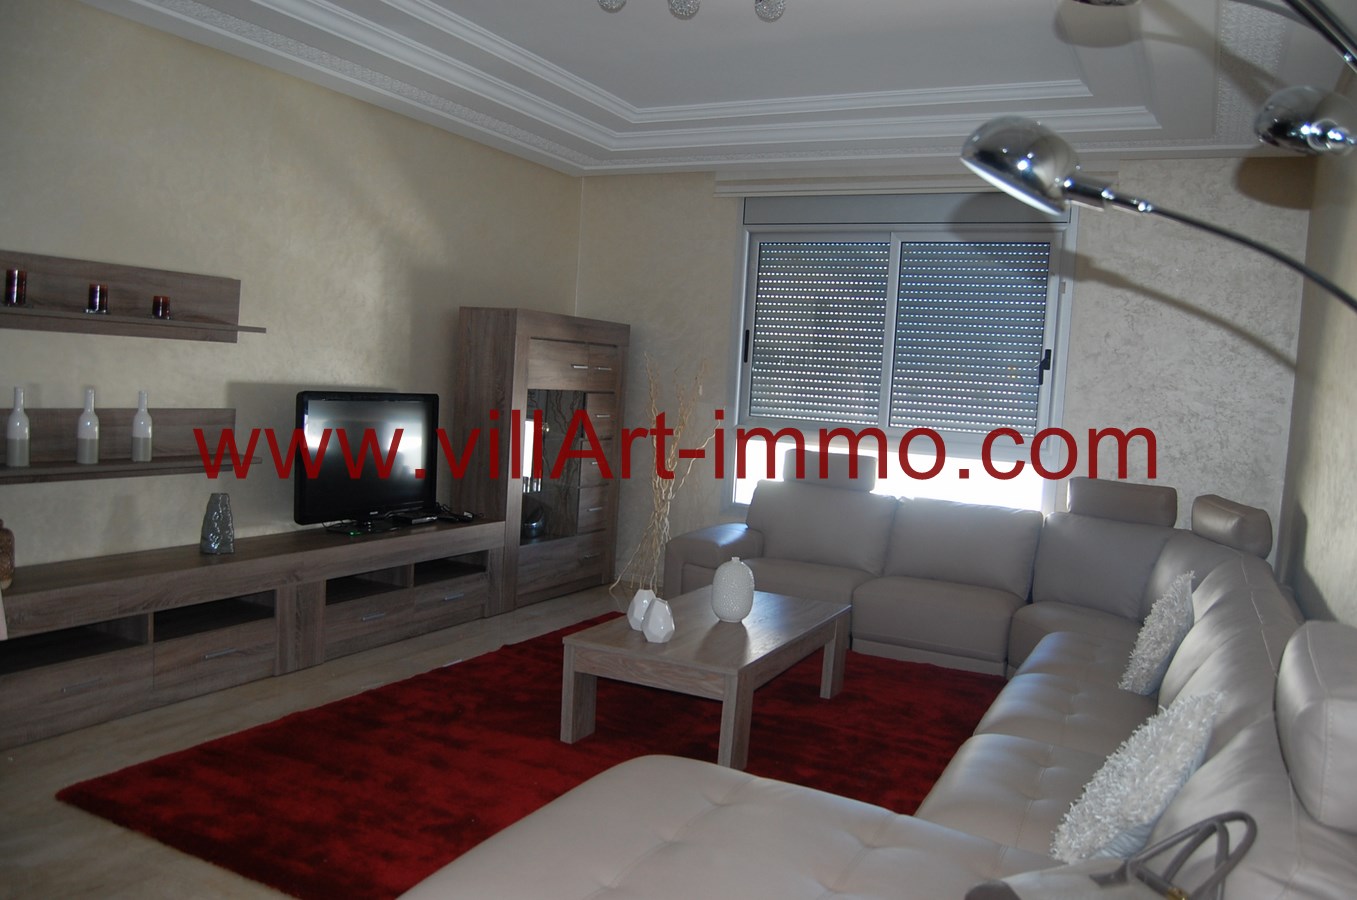 2-a-louer-appartement-meuble-tanger-salon-l871-villart-immo